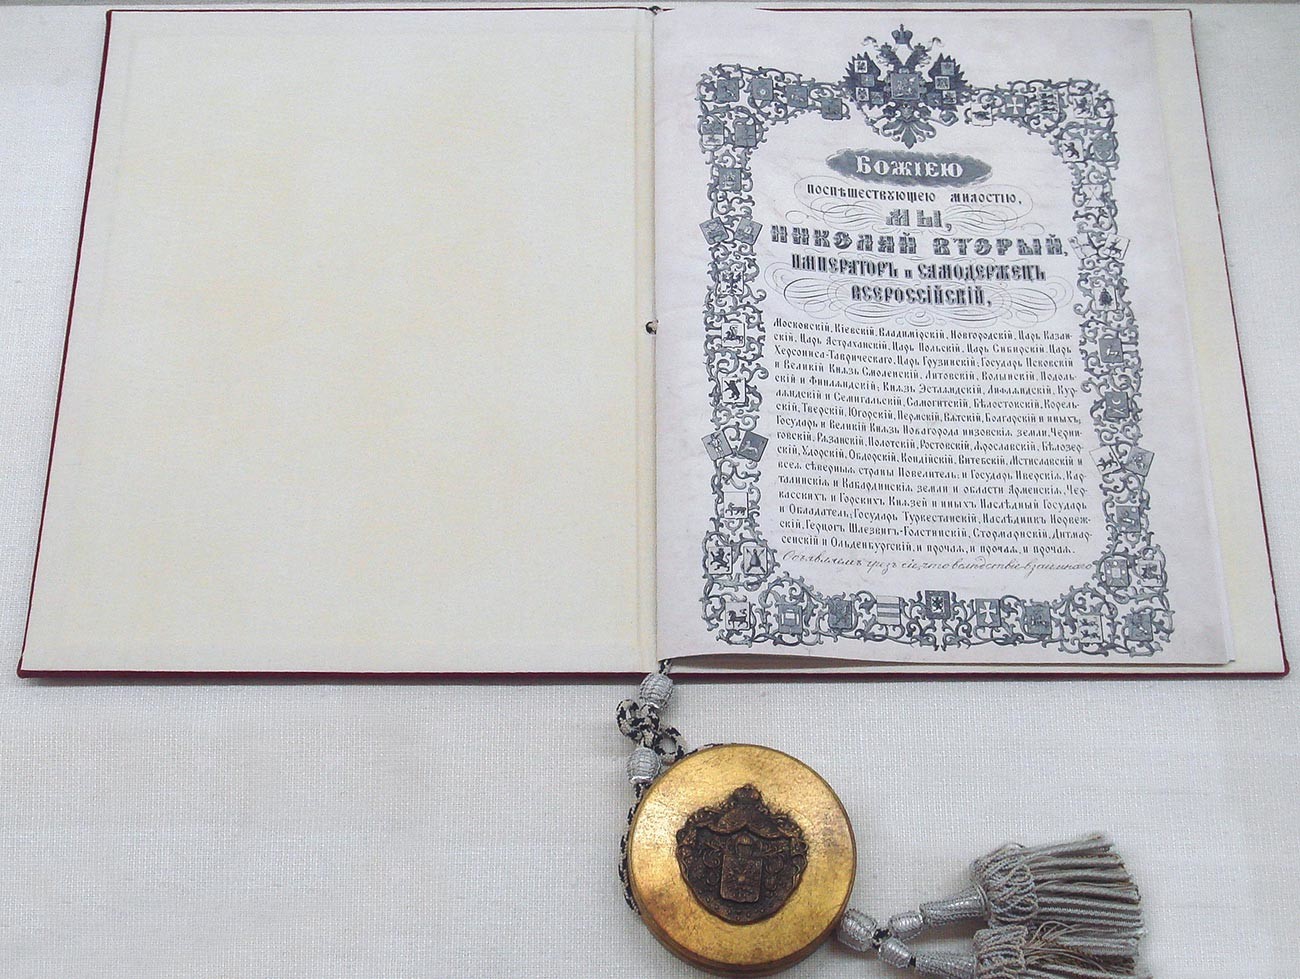 Ratifikacija Portsmouthskog mirovnog sporazuma između Japana i Rusije, 25. studenog 1905.

